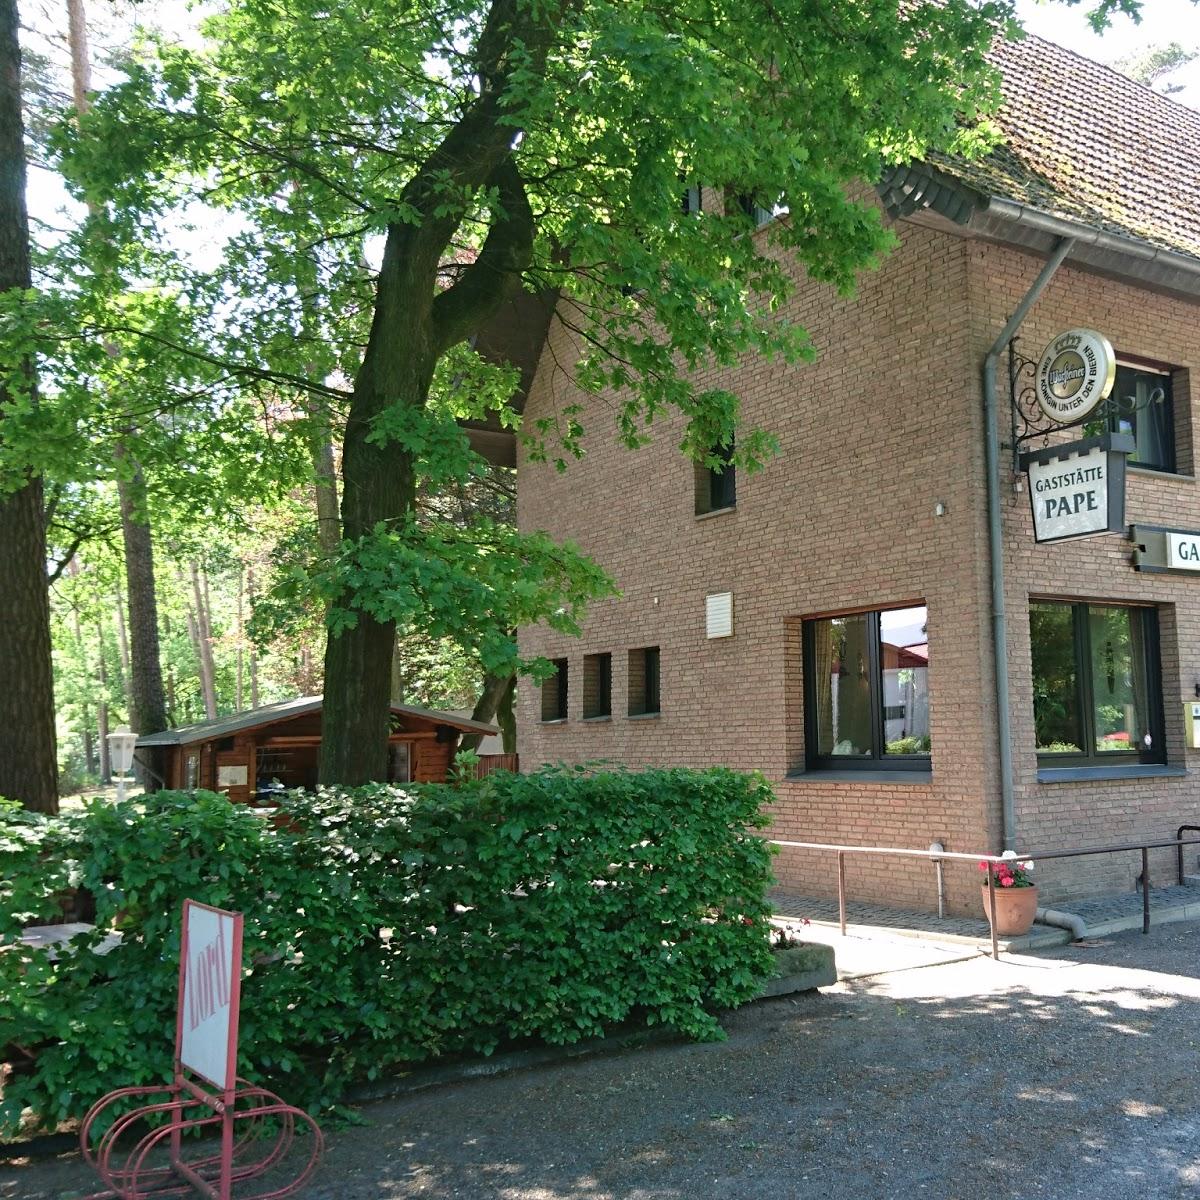 Restaurant "Gasthaus Pape" in Delbrück